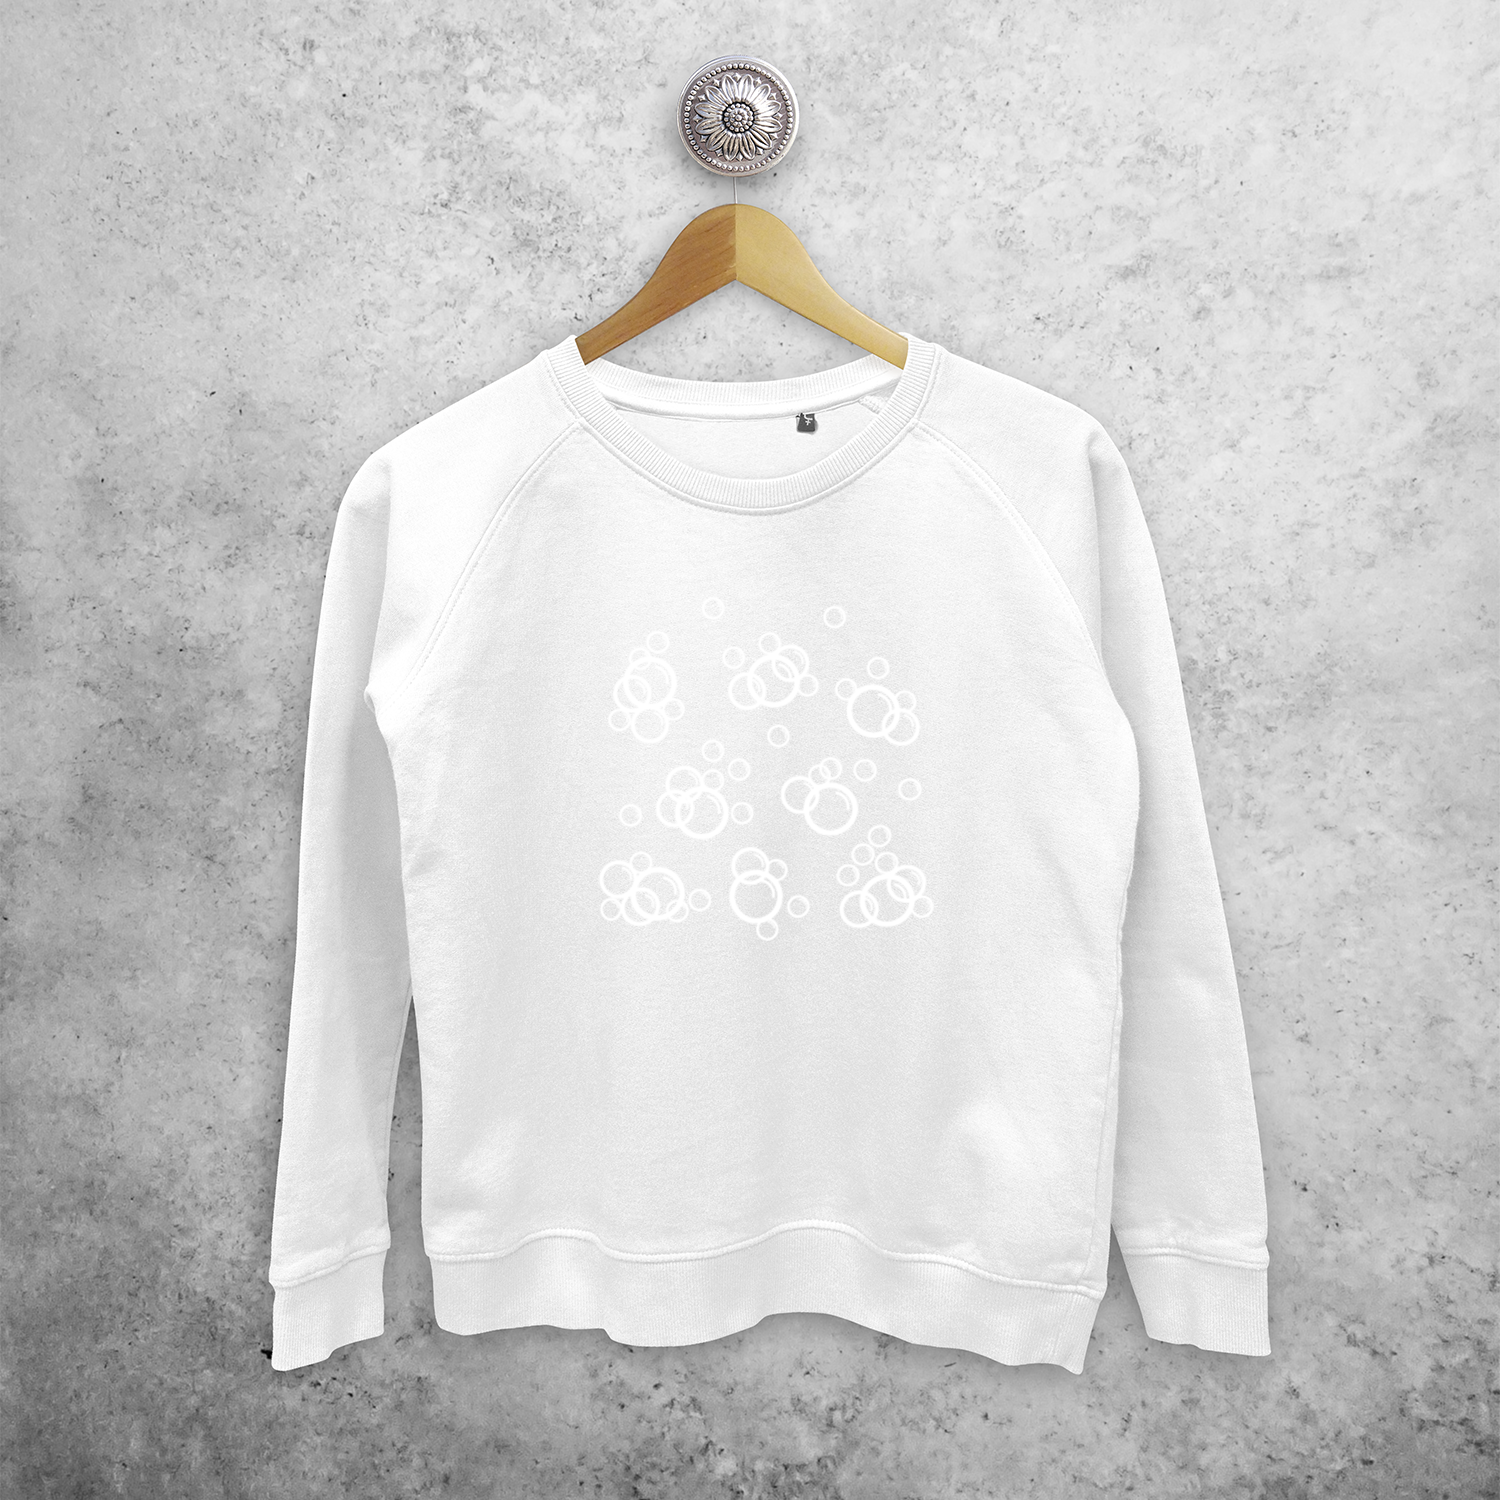 Bubbles magic sweater